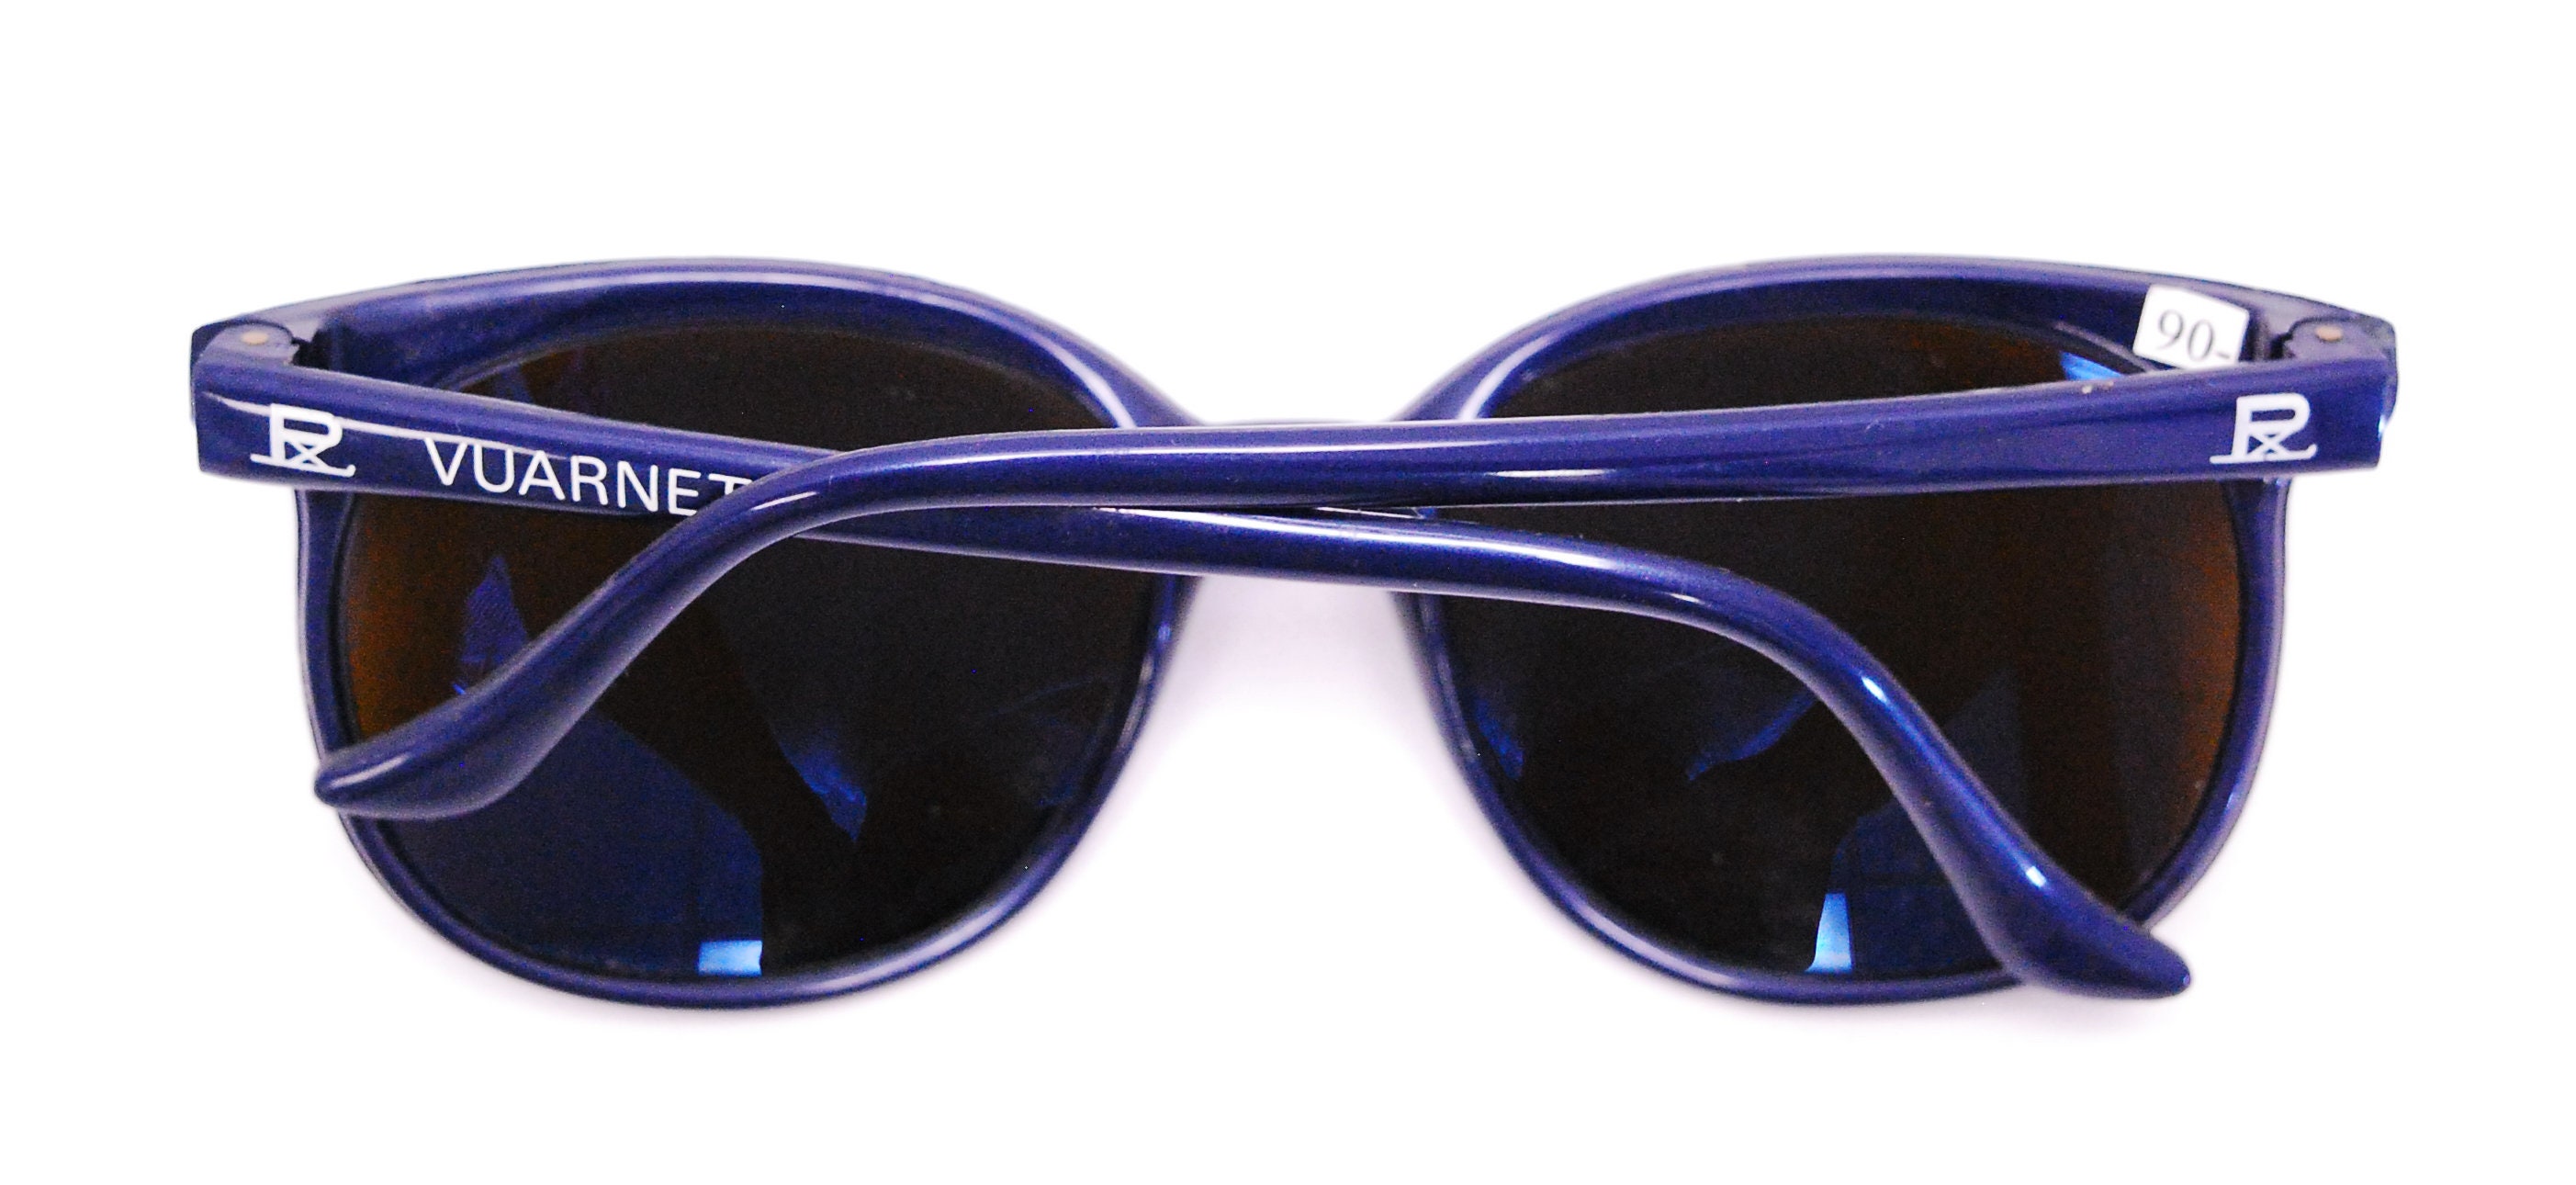 Vintage 1970's/80's Blue VUARNET Sunglasses / Pouilloux France / Model 002  D / Retro Collectable Rare 2542 - Etsy